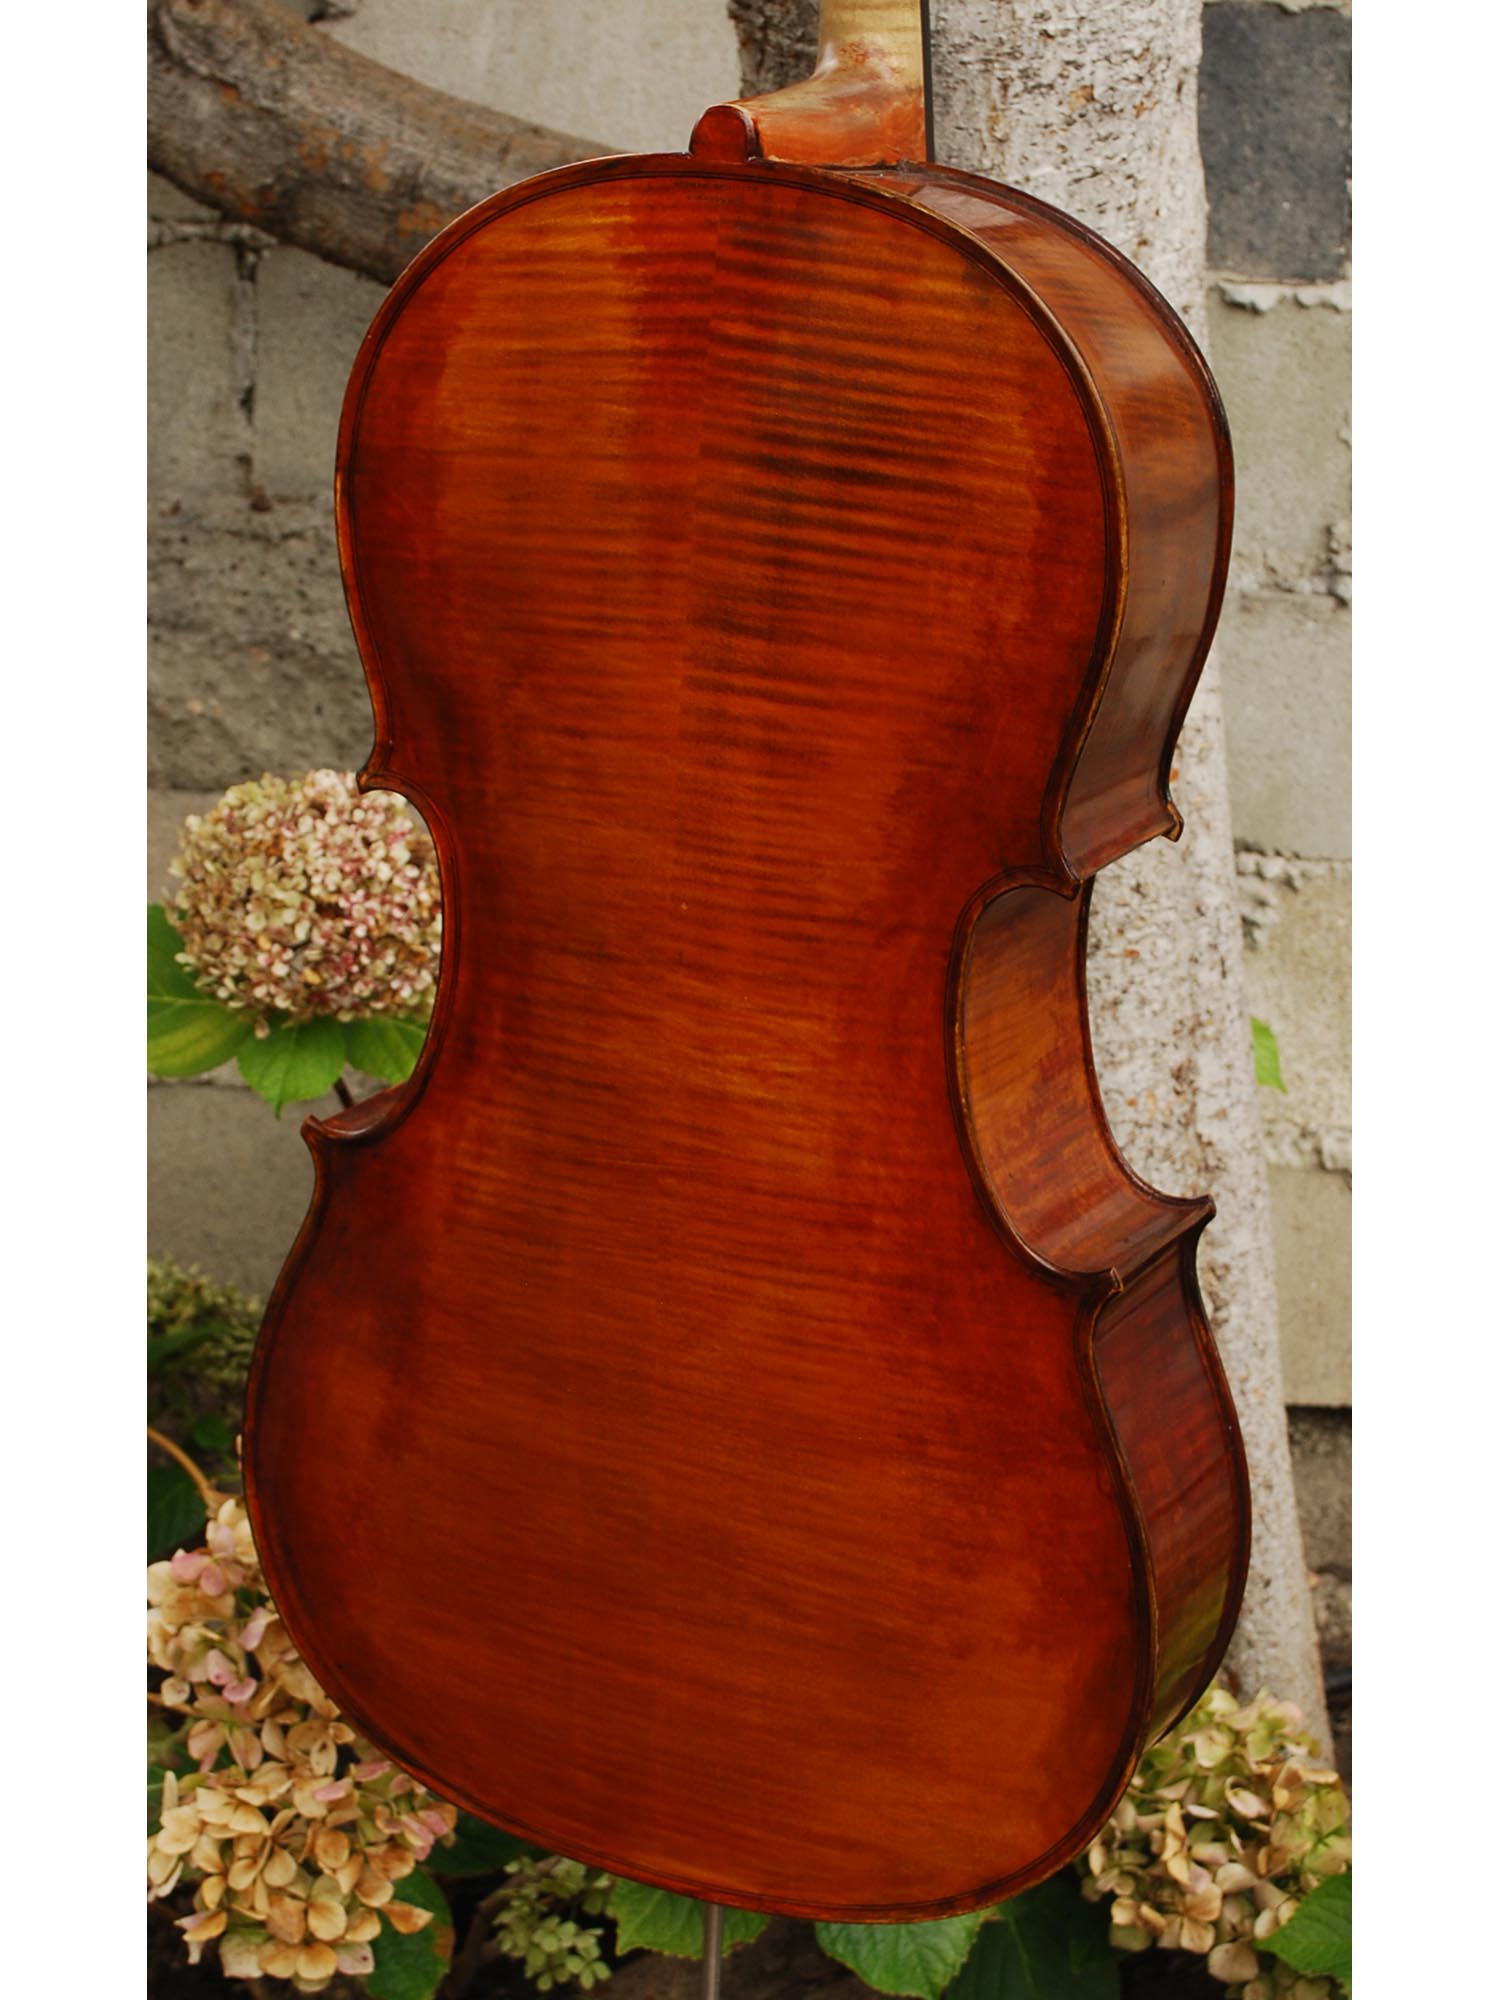 Herman Schaller 'Gofriller' 1/2 Cello